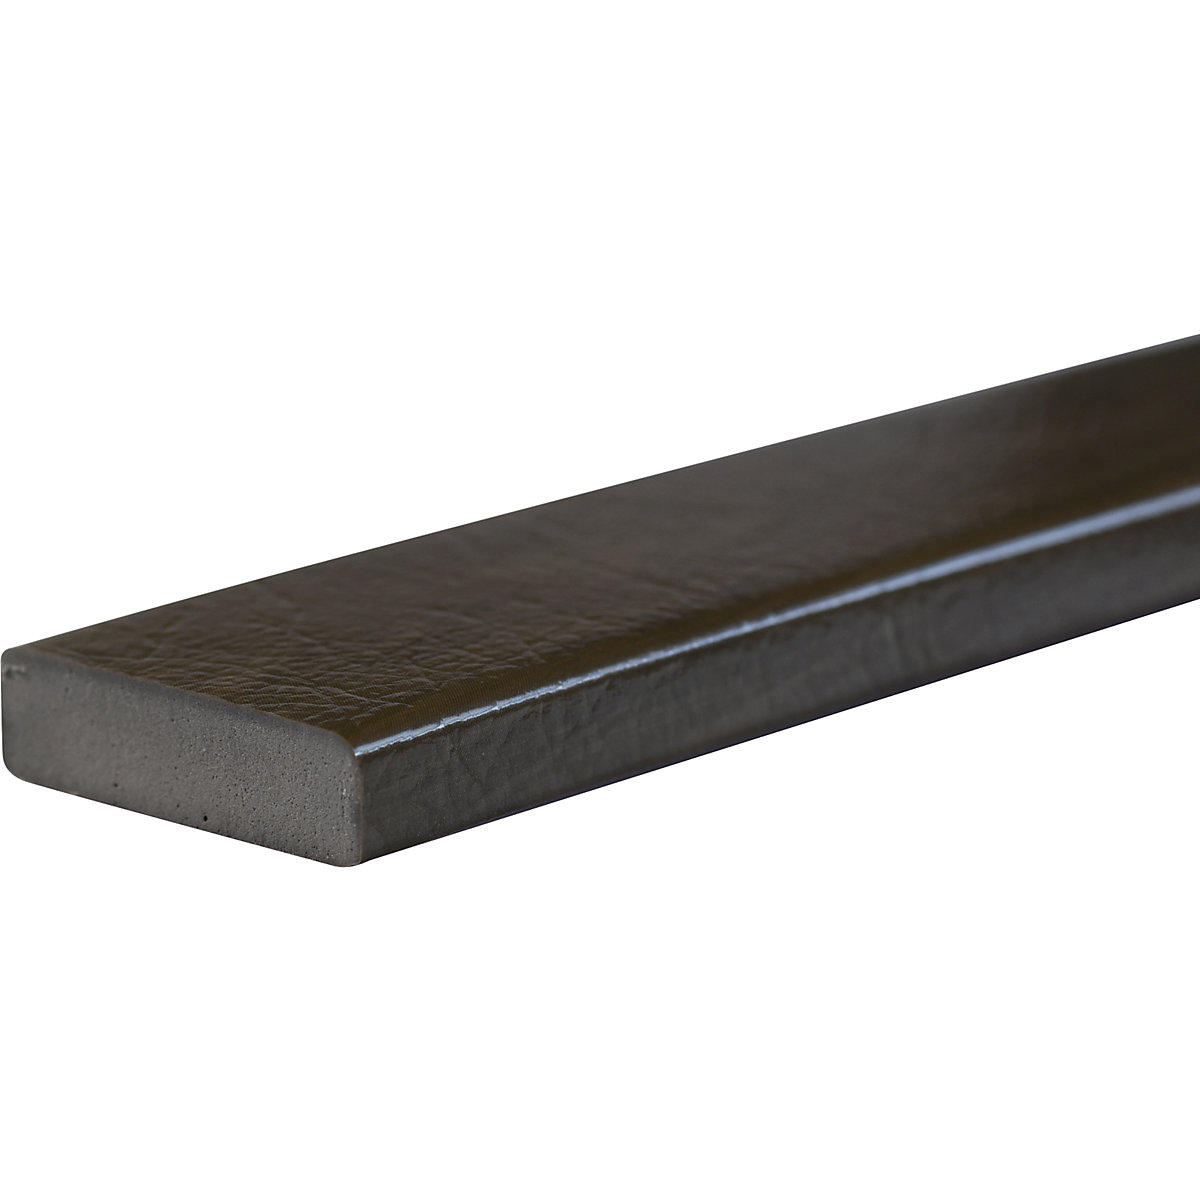 Protección de superficies Knuffi® – SHG, tipo S, pieza de 1 m, decoración de madera en color caqui-24